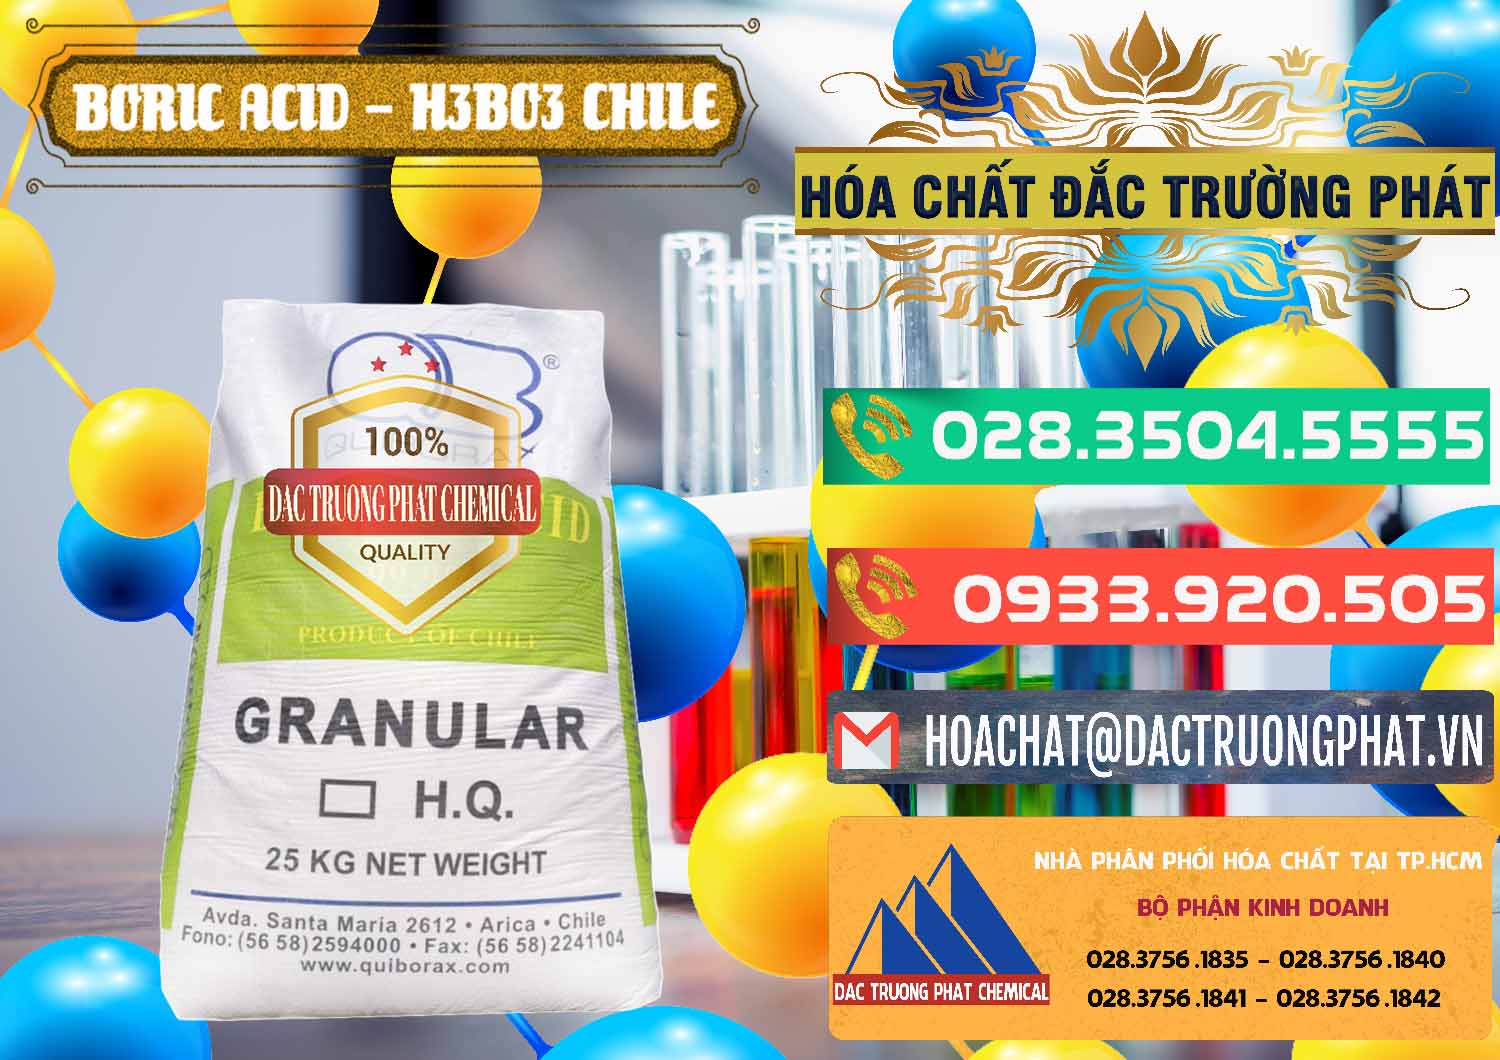 Chuyên cung cấp - bán Acid Boric – Axit Boric H3BO3 99% Quiborax Chile - 0281 - Cty cung ứng ( phân phối ) hóa chất tại TP.HCM - congtyhoachat.com.vn